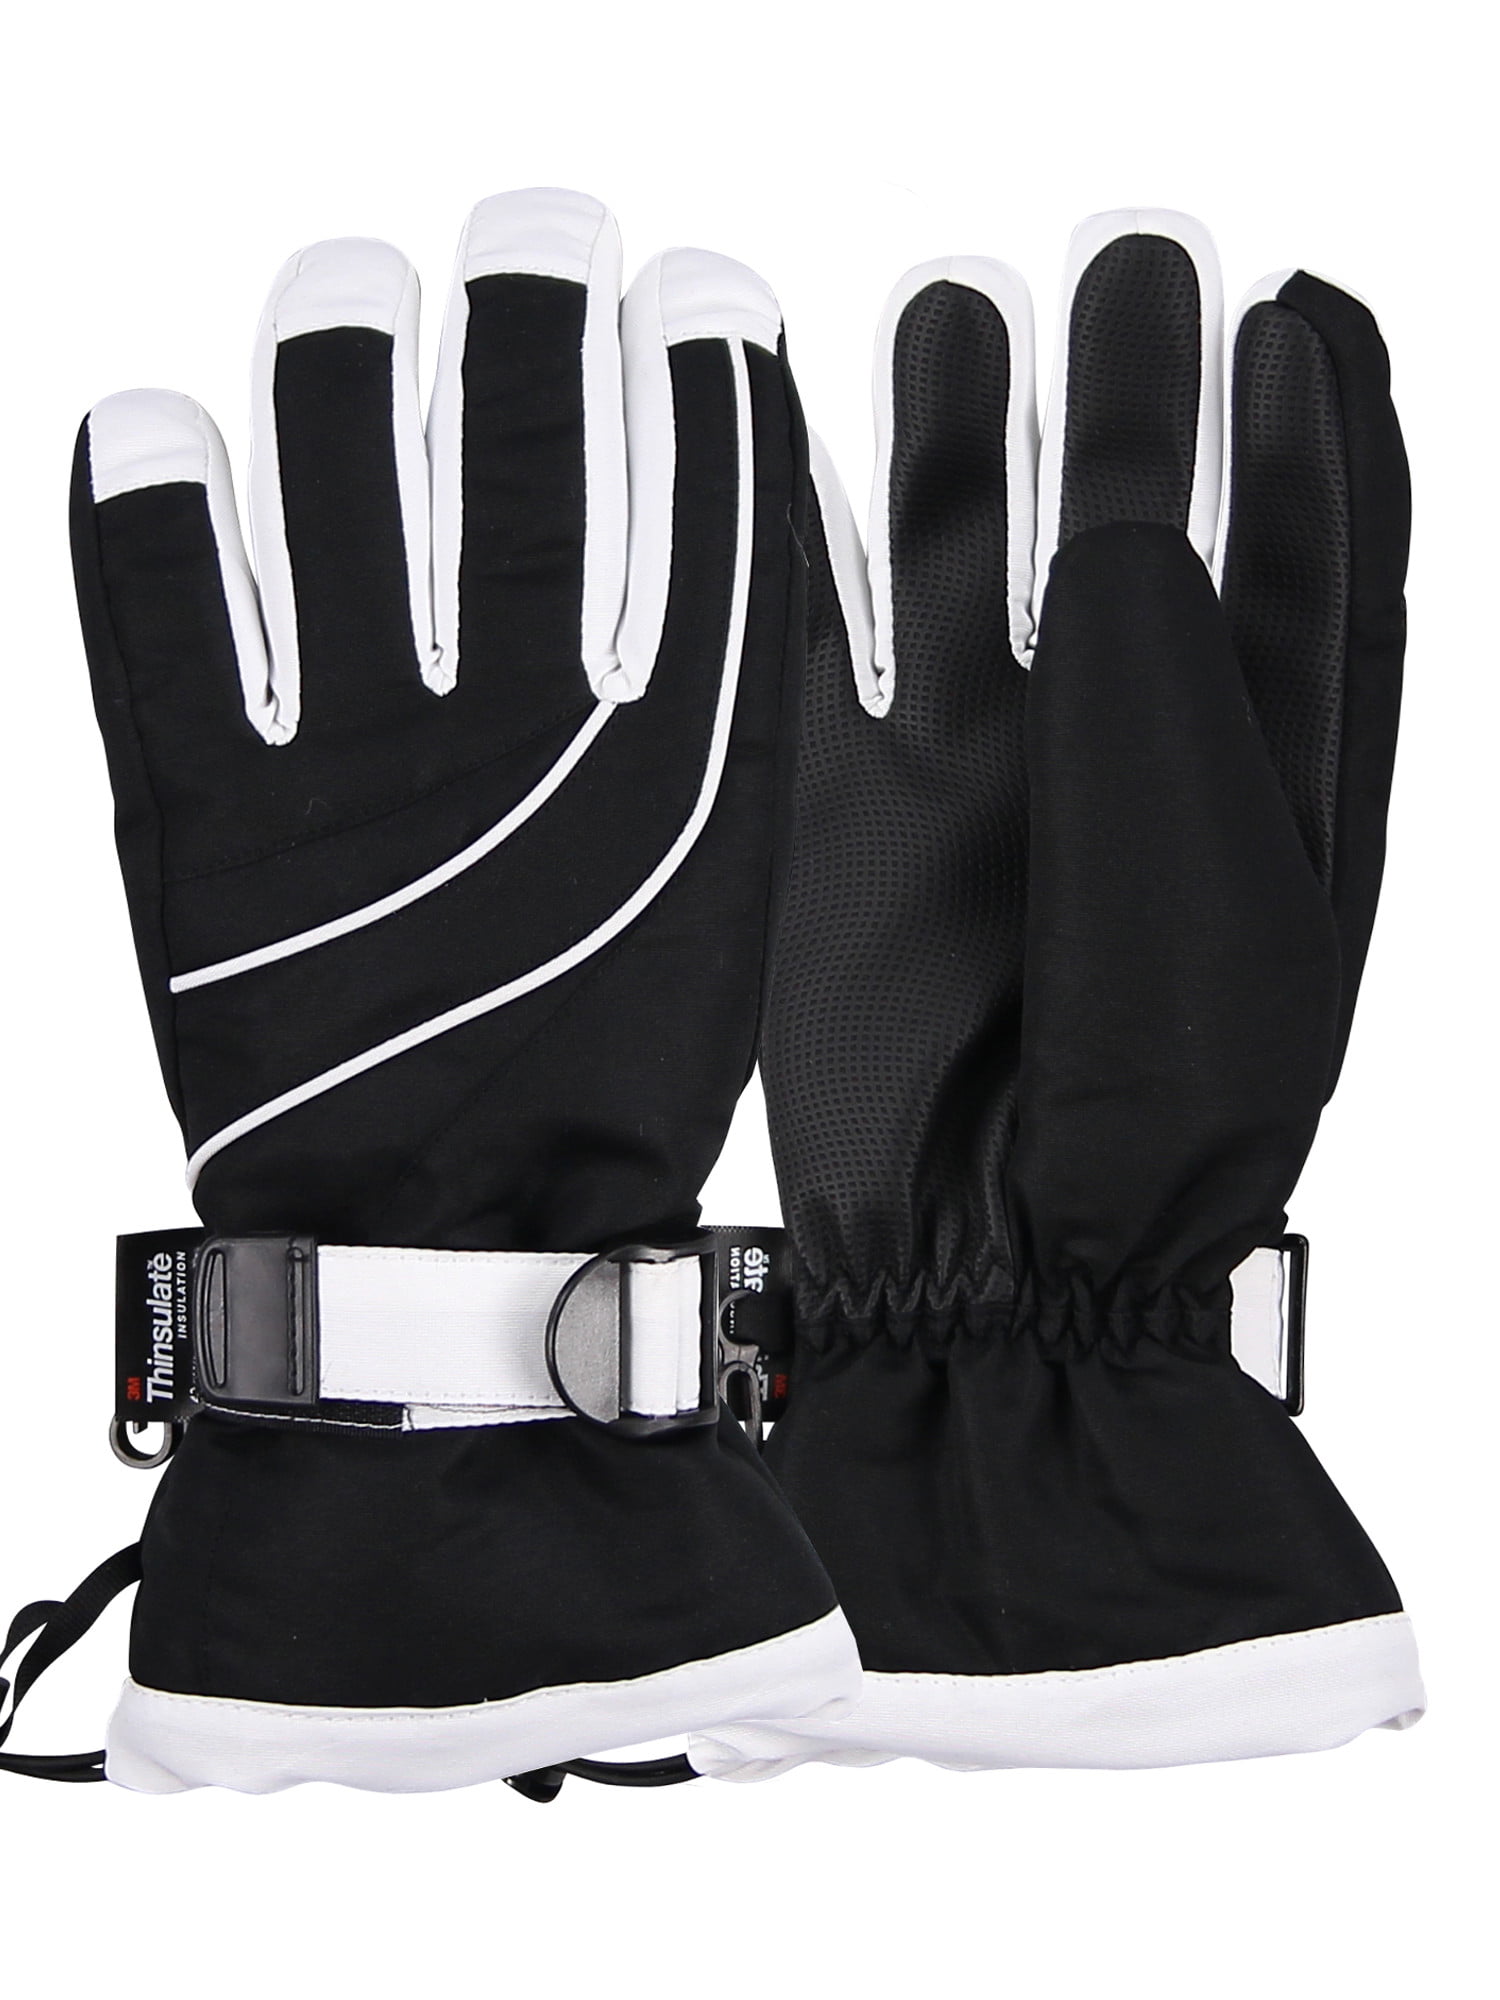 Urban Boundaries Women's Insulated Waterproof Winter Snow Ski Glove (Black/White, Large) 0016